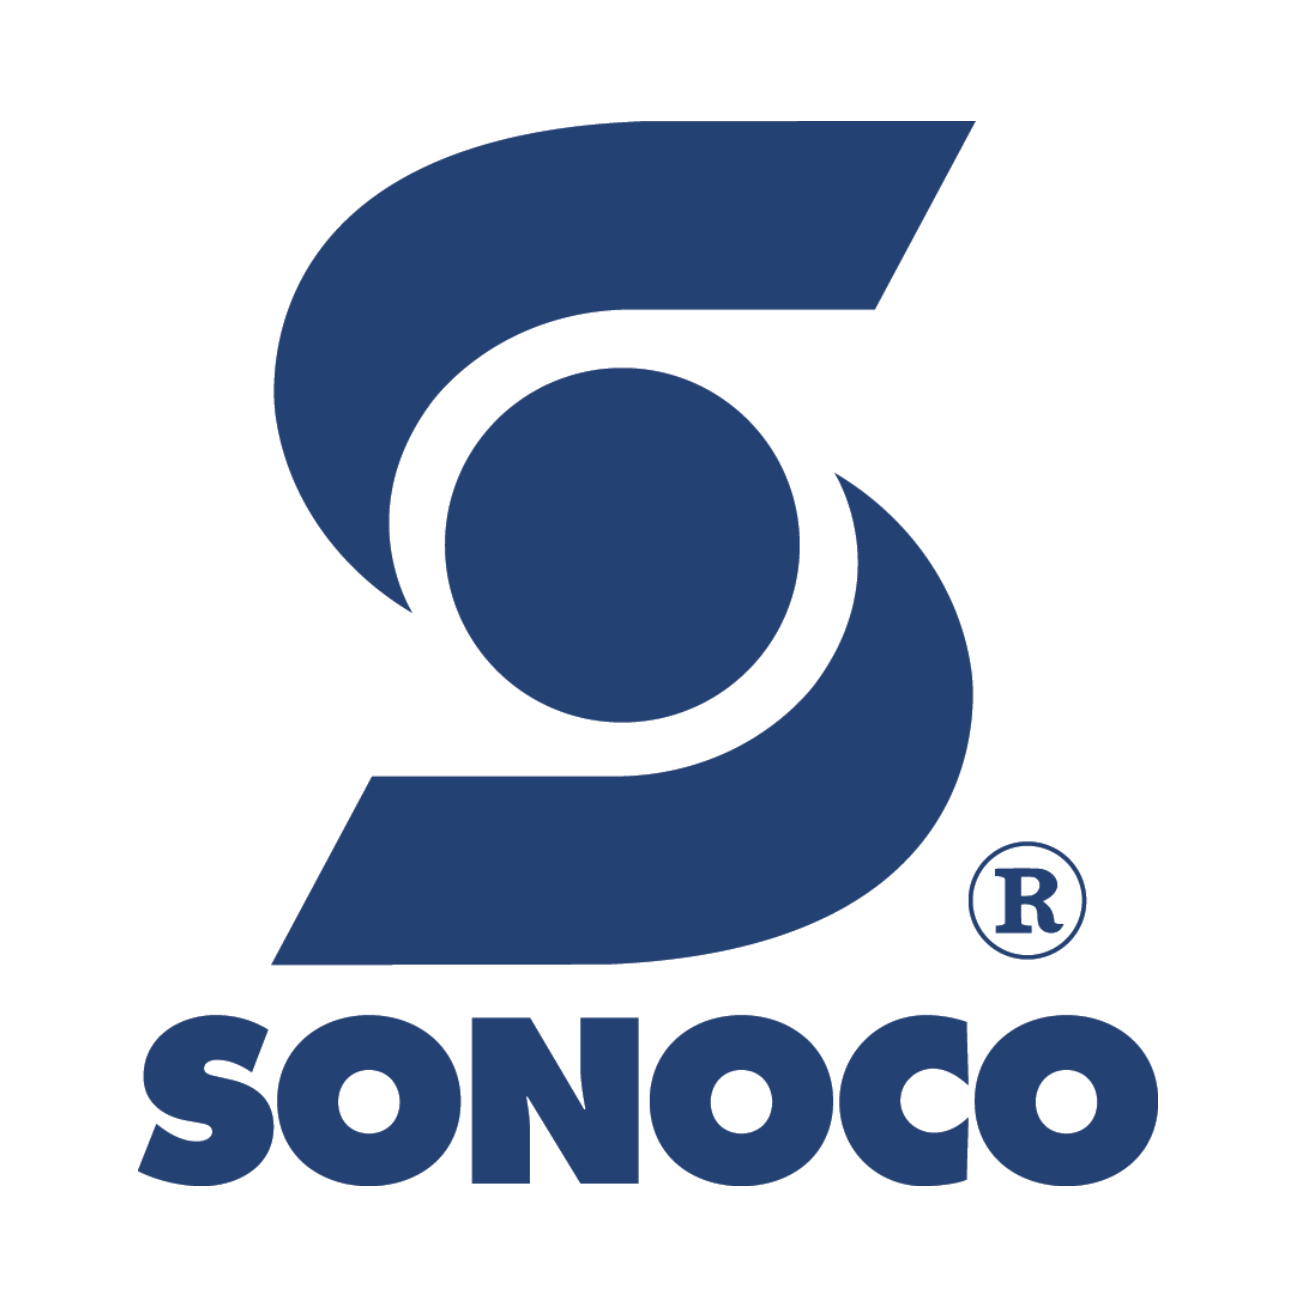 Sonoco Logo - Welcome to Sonoco. Sonoco Products Company